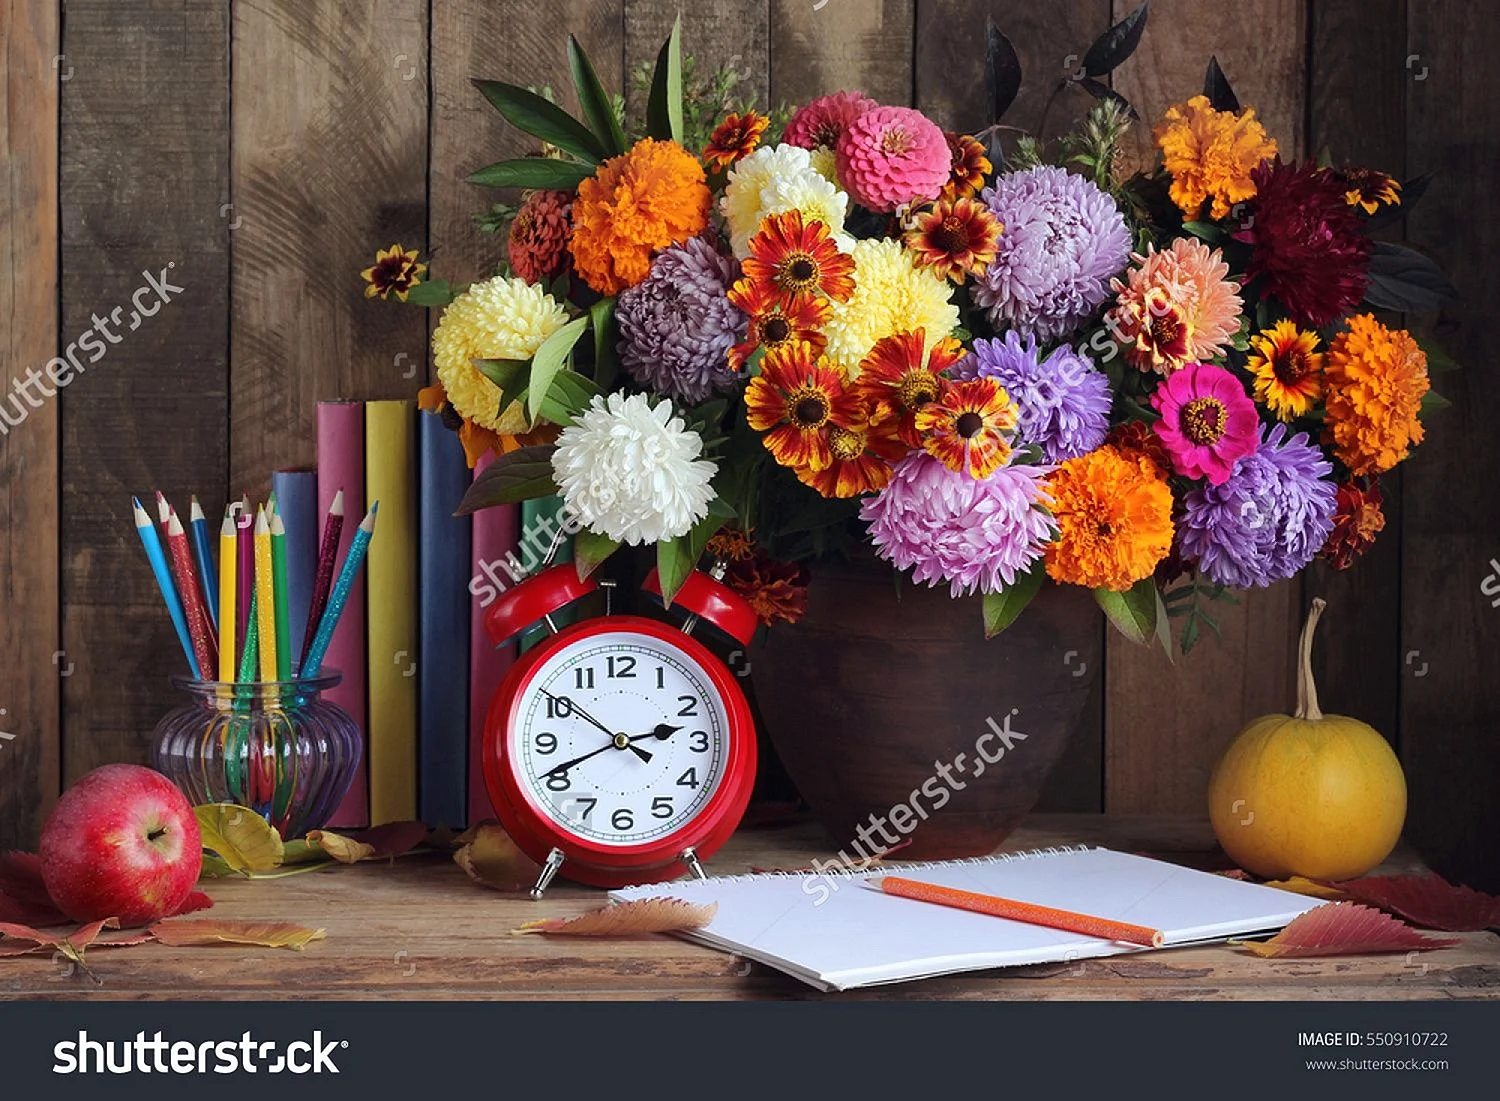 Цветы на учительском столе